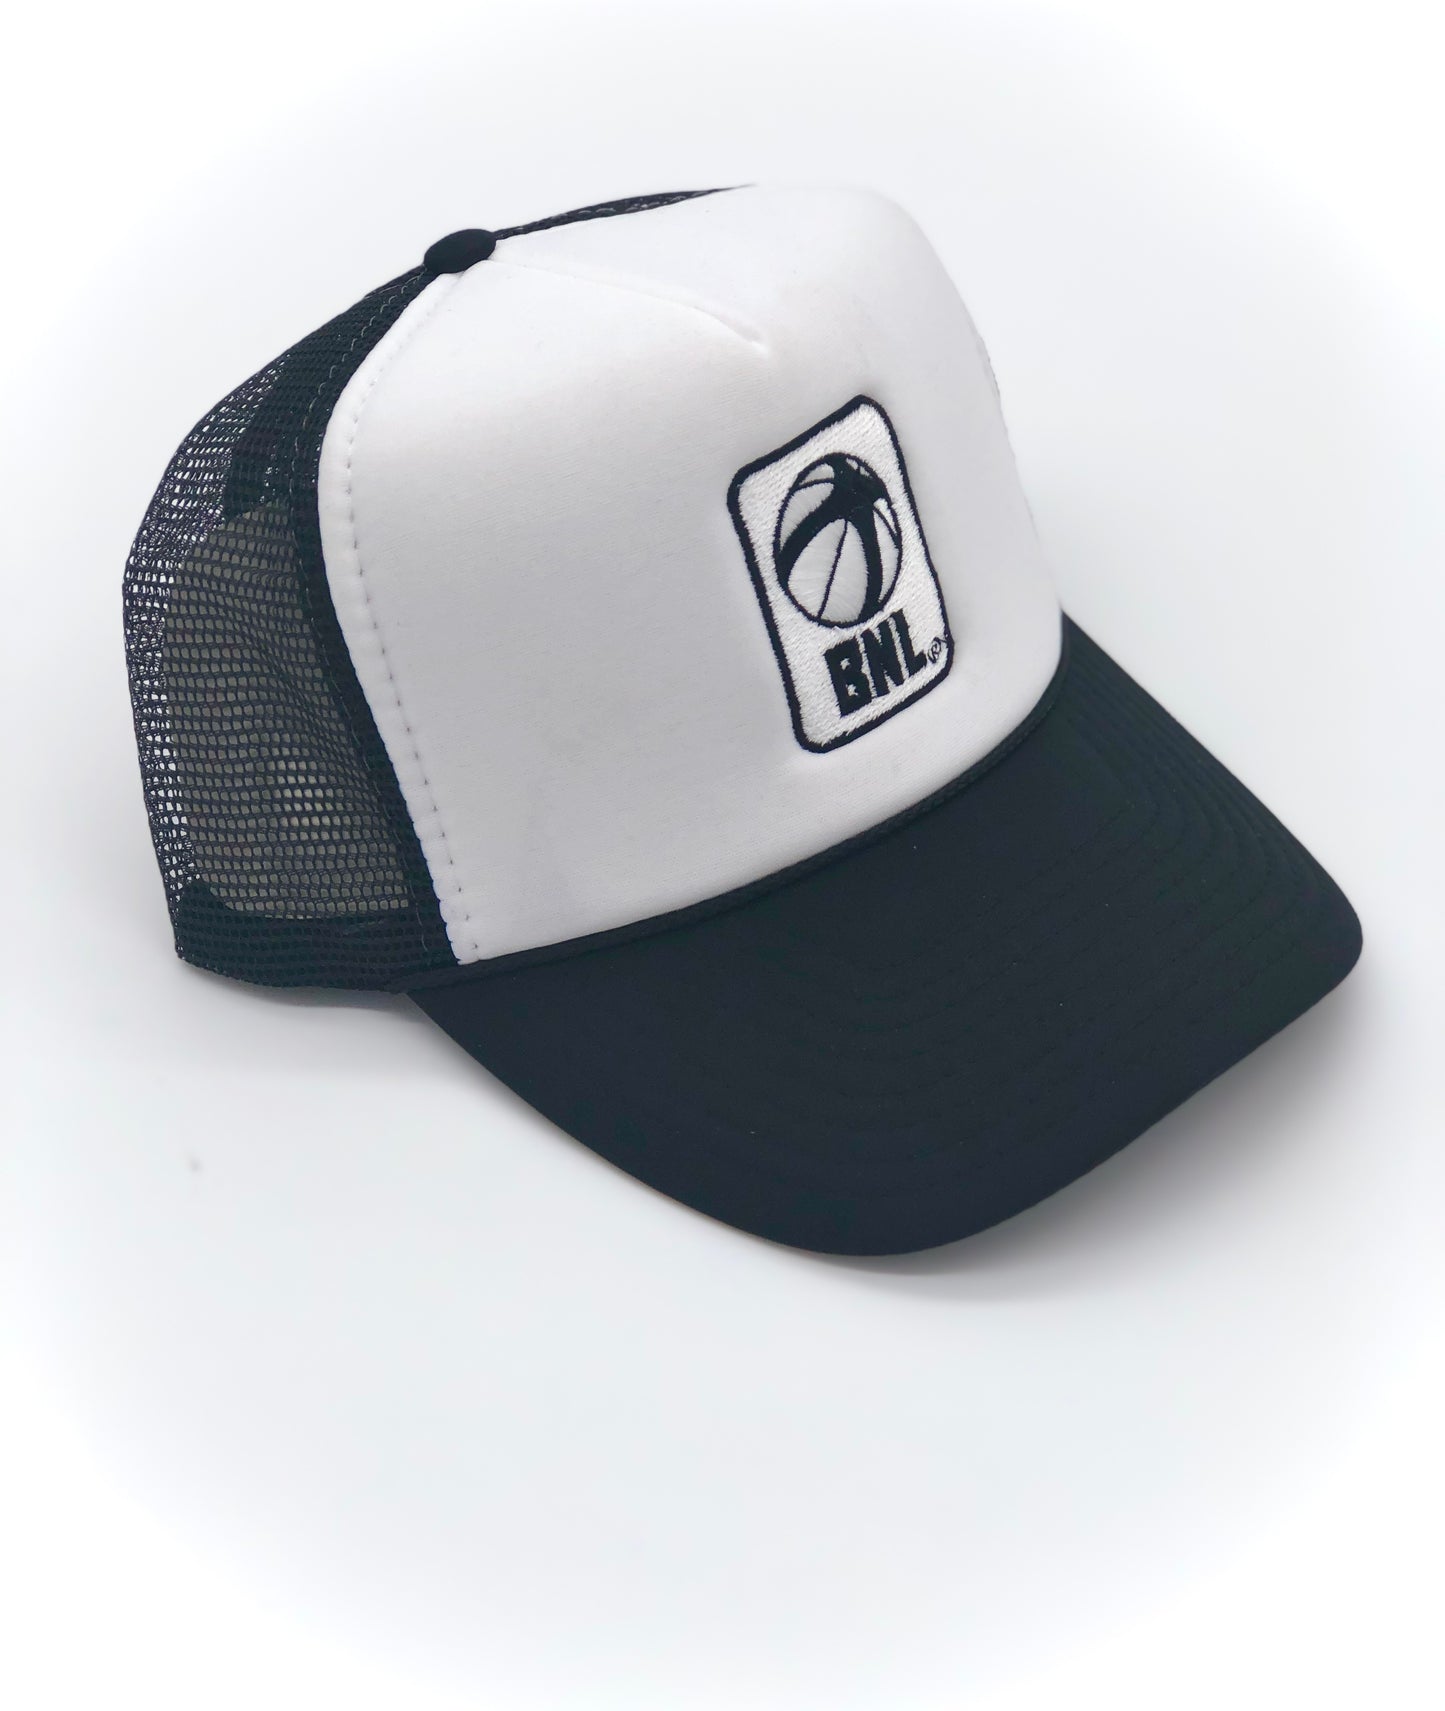 BNL Trucker Hat in Black